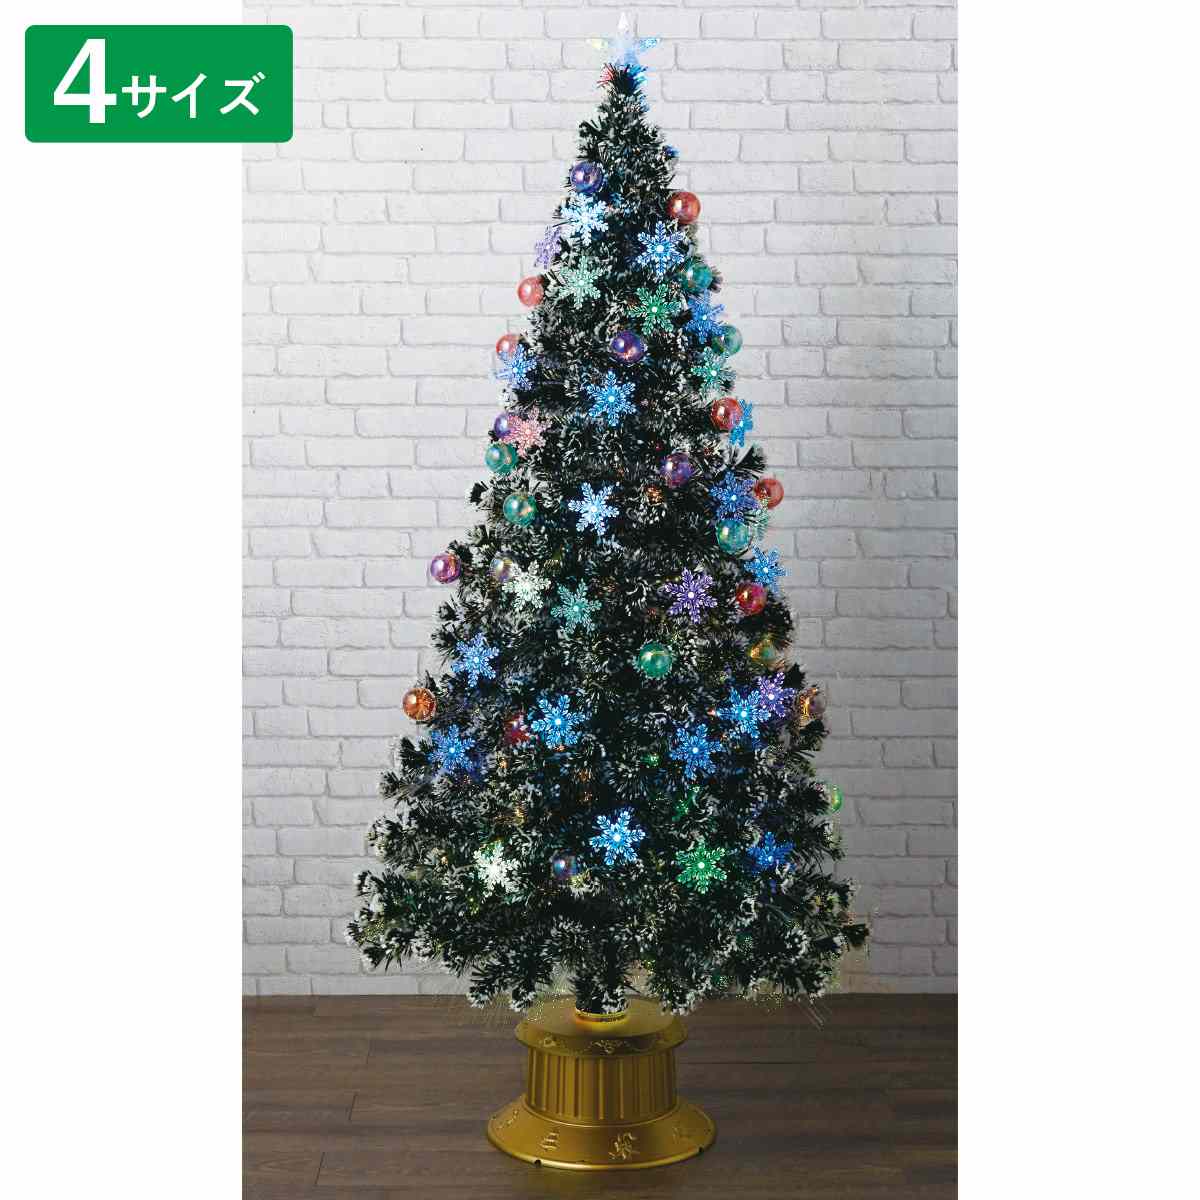 高級品市場 クリスマスツリー LEDファイバーツリー 150cm - クリスマス - www.ucs.gob.ve